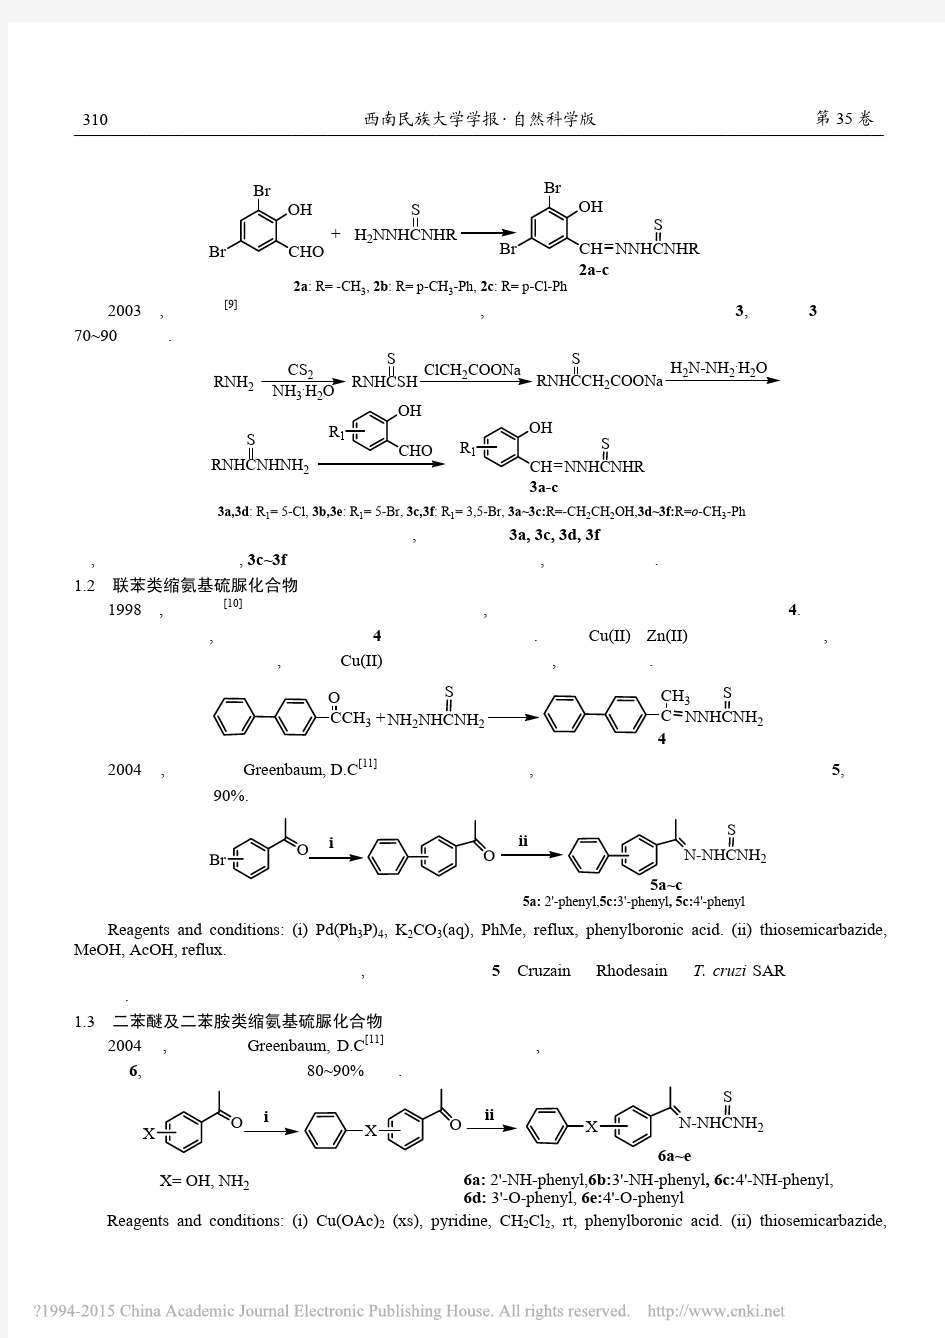 缩氨基硫脲类化合物的合成及生物活性研究_李清寒